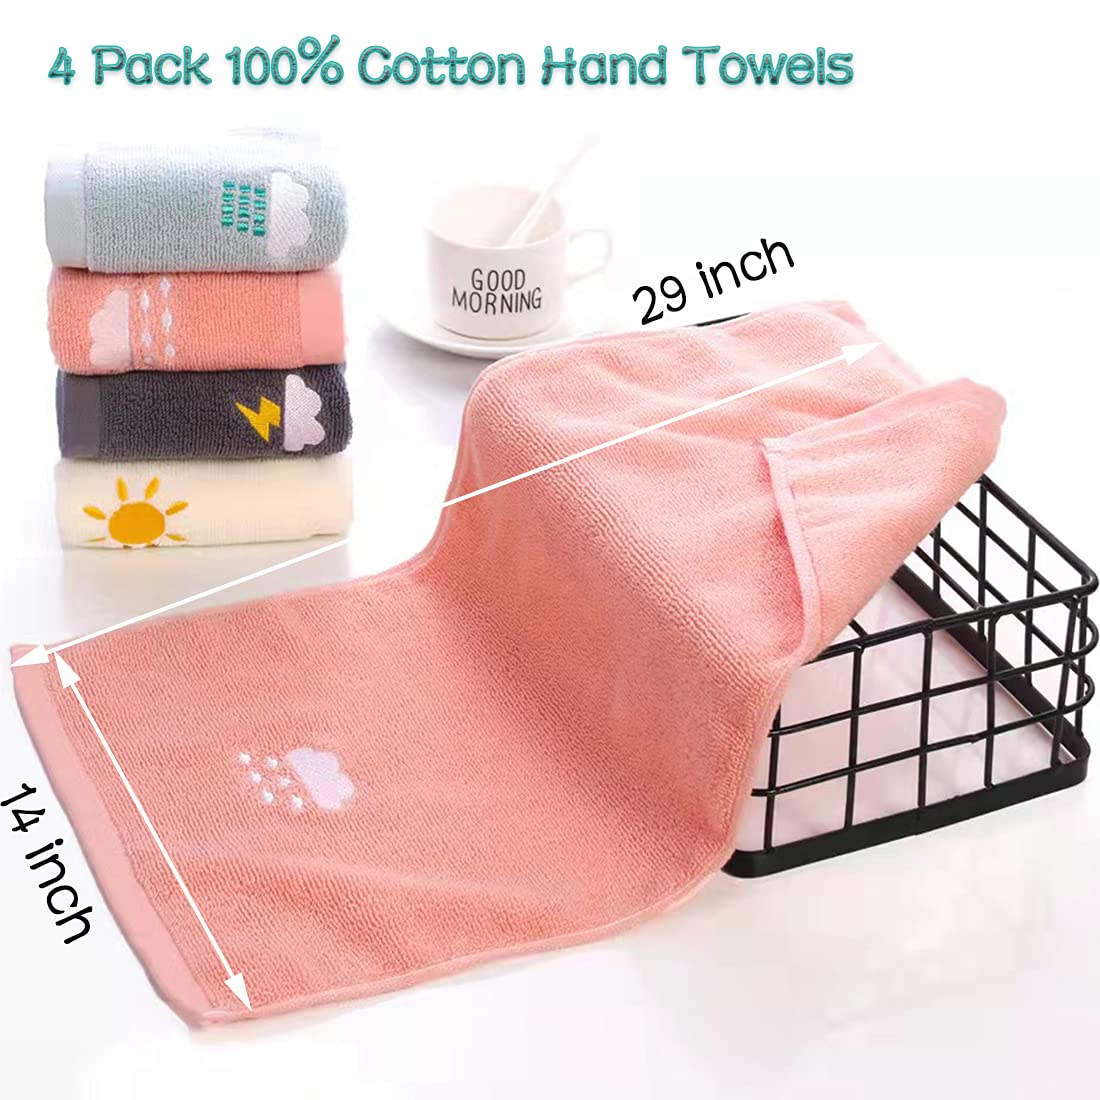 100% Cotton Bath Hand Towel Para sa Banyo